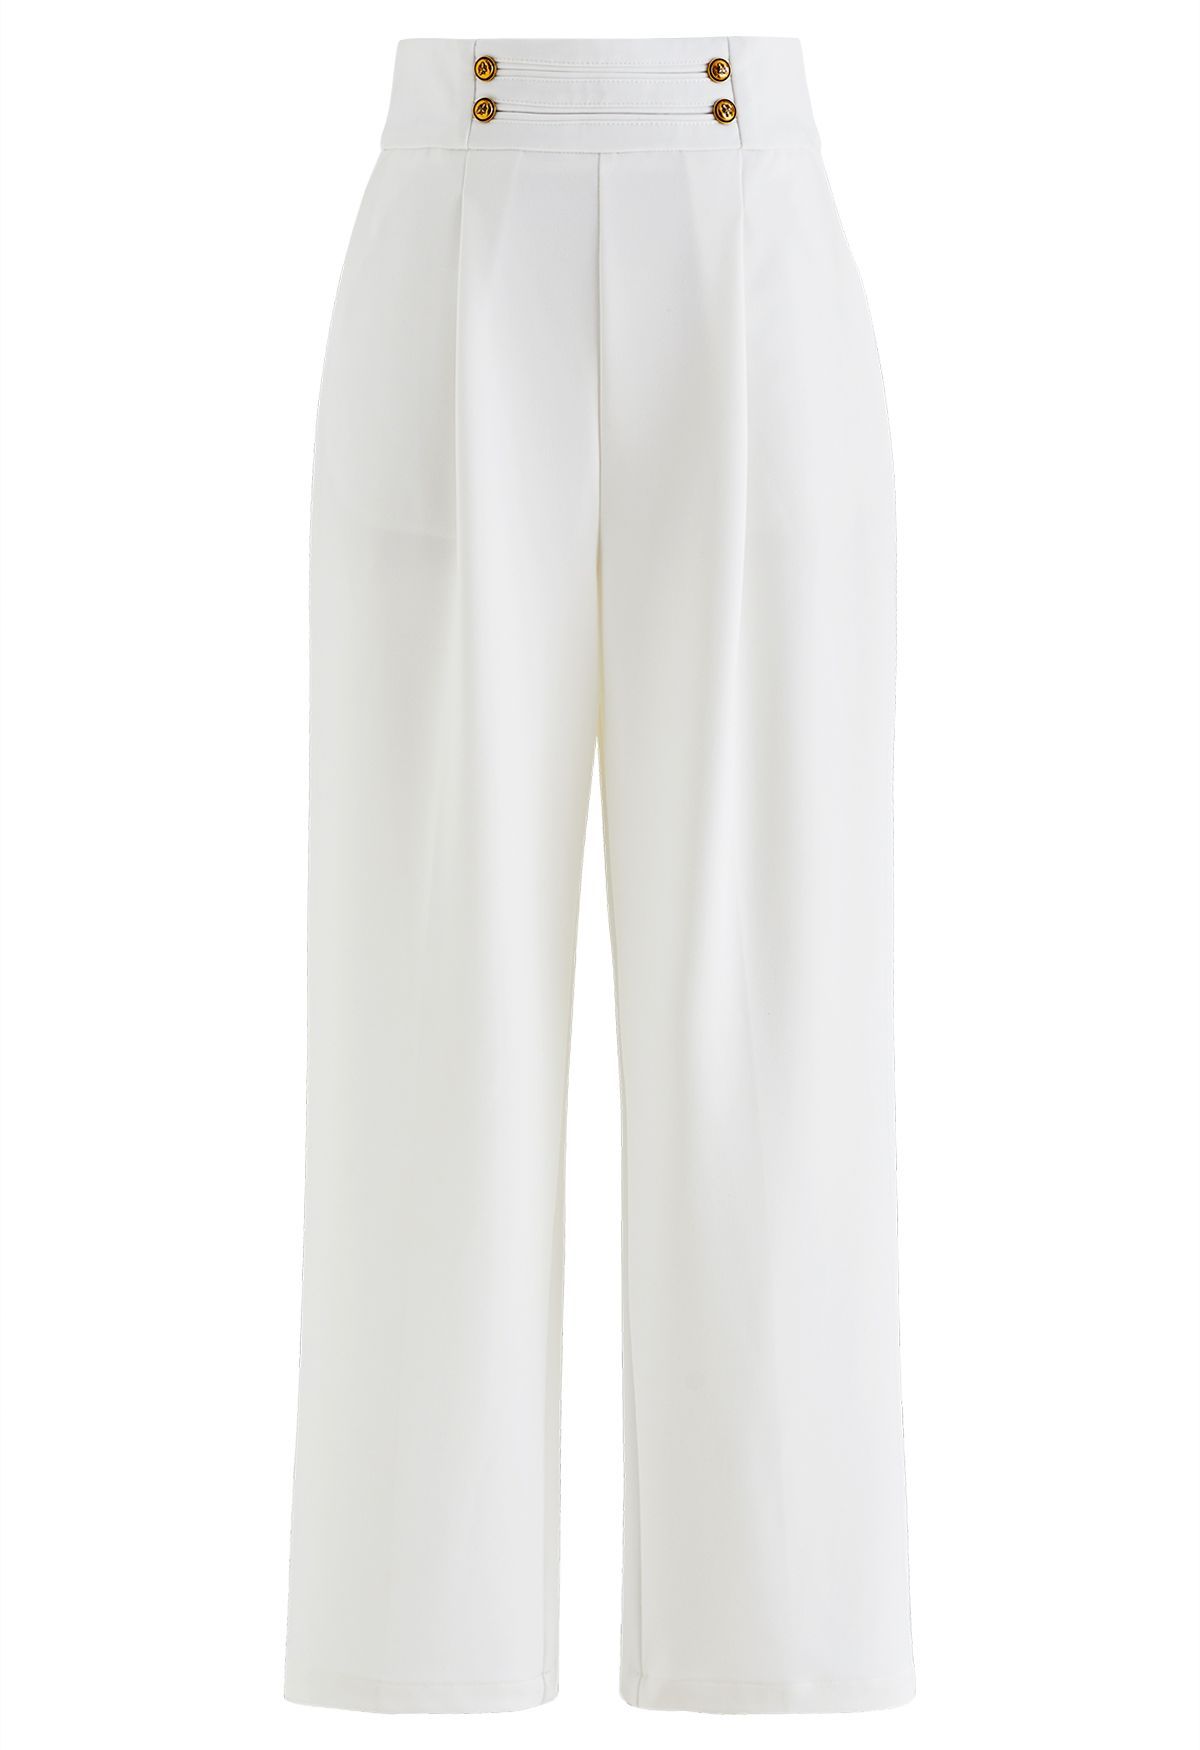 Weite Hose mit goldenen Knöpfen in Weiß | Chicwish